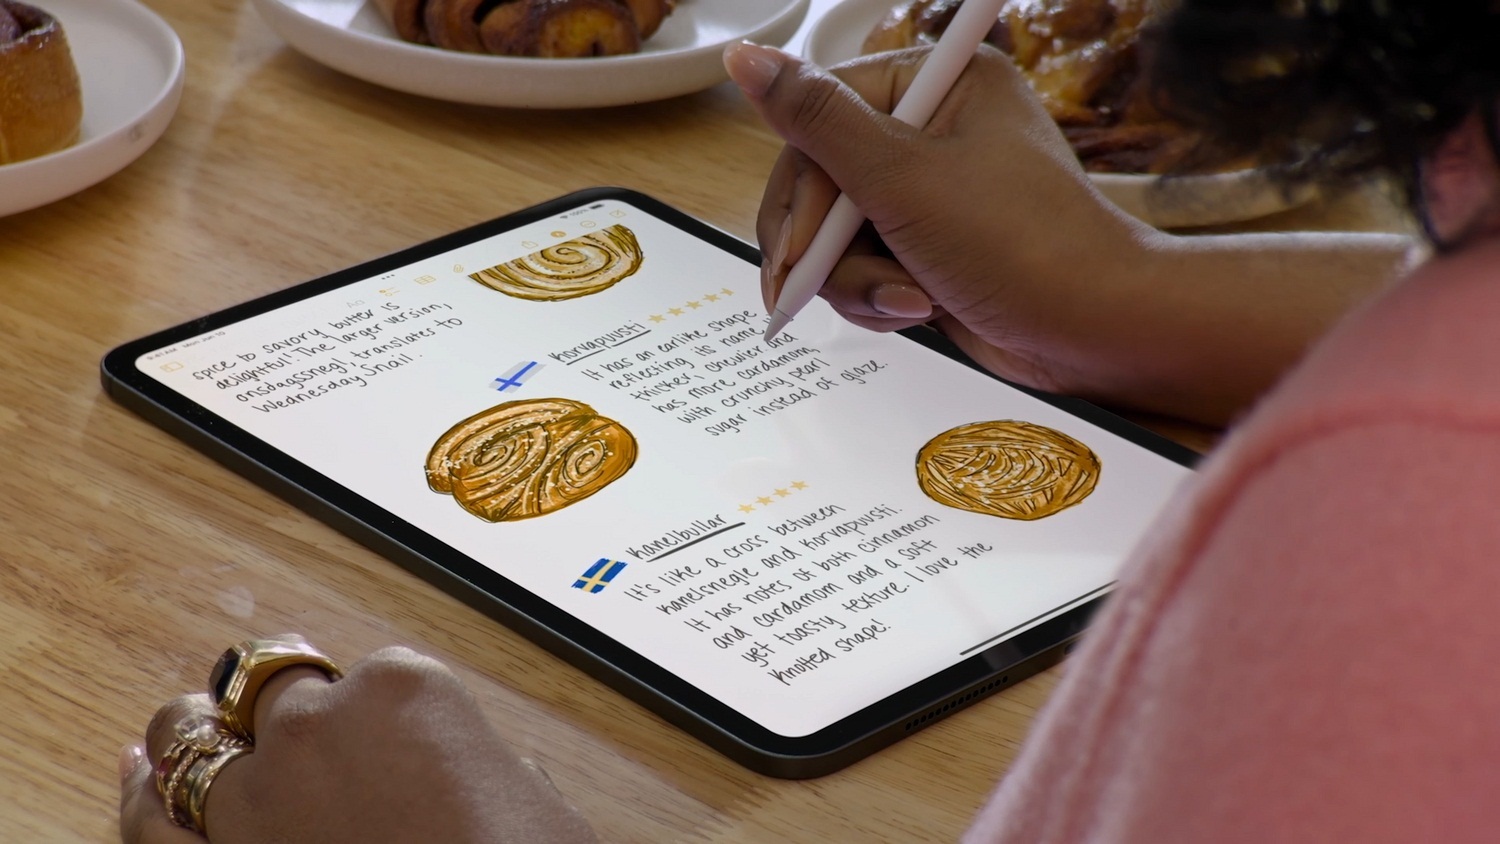 Viết trên màn hình iPad bằng bút cảm ứng Apple Pencil (Ảnh: Internet)